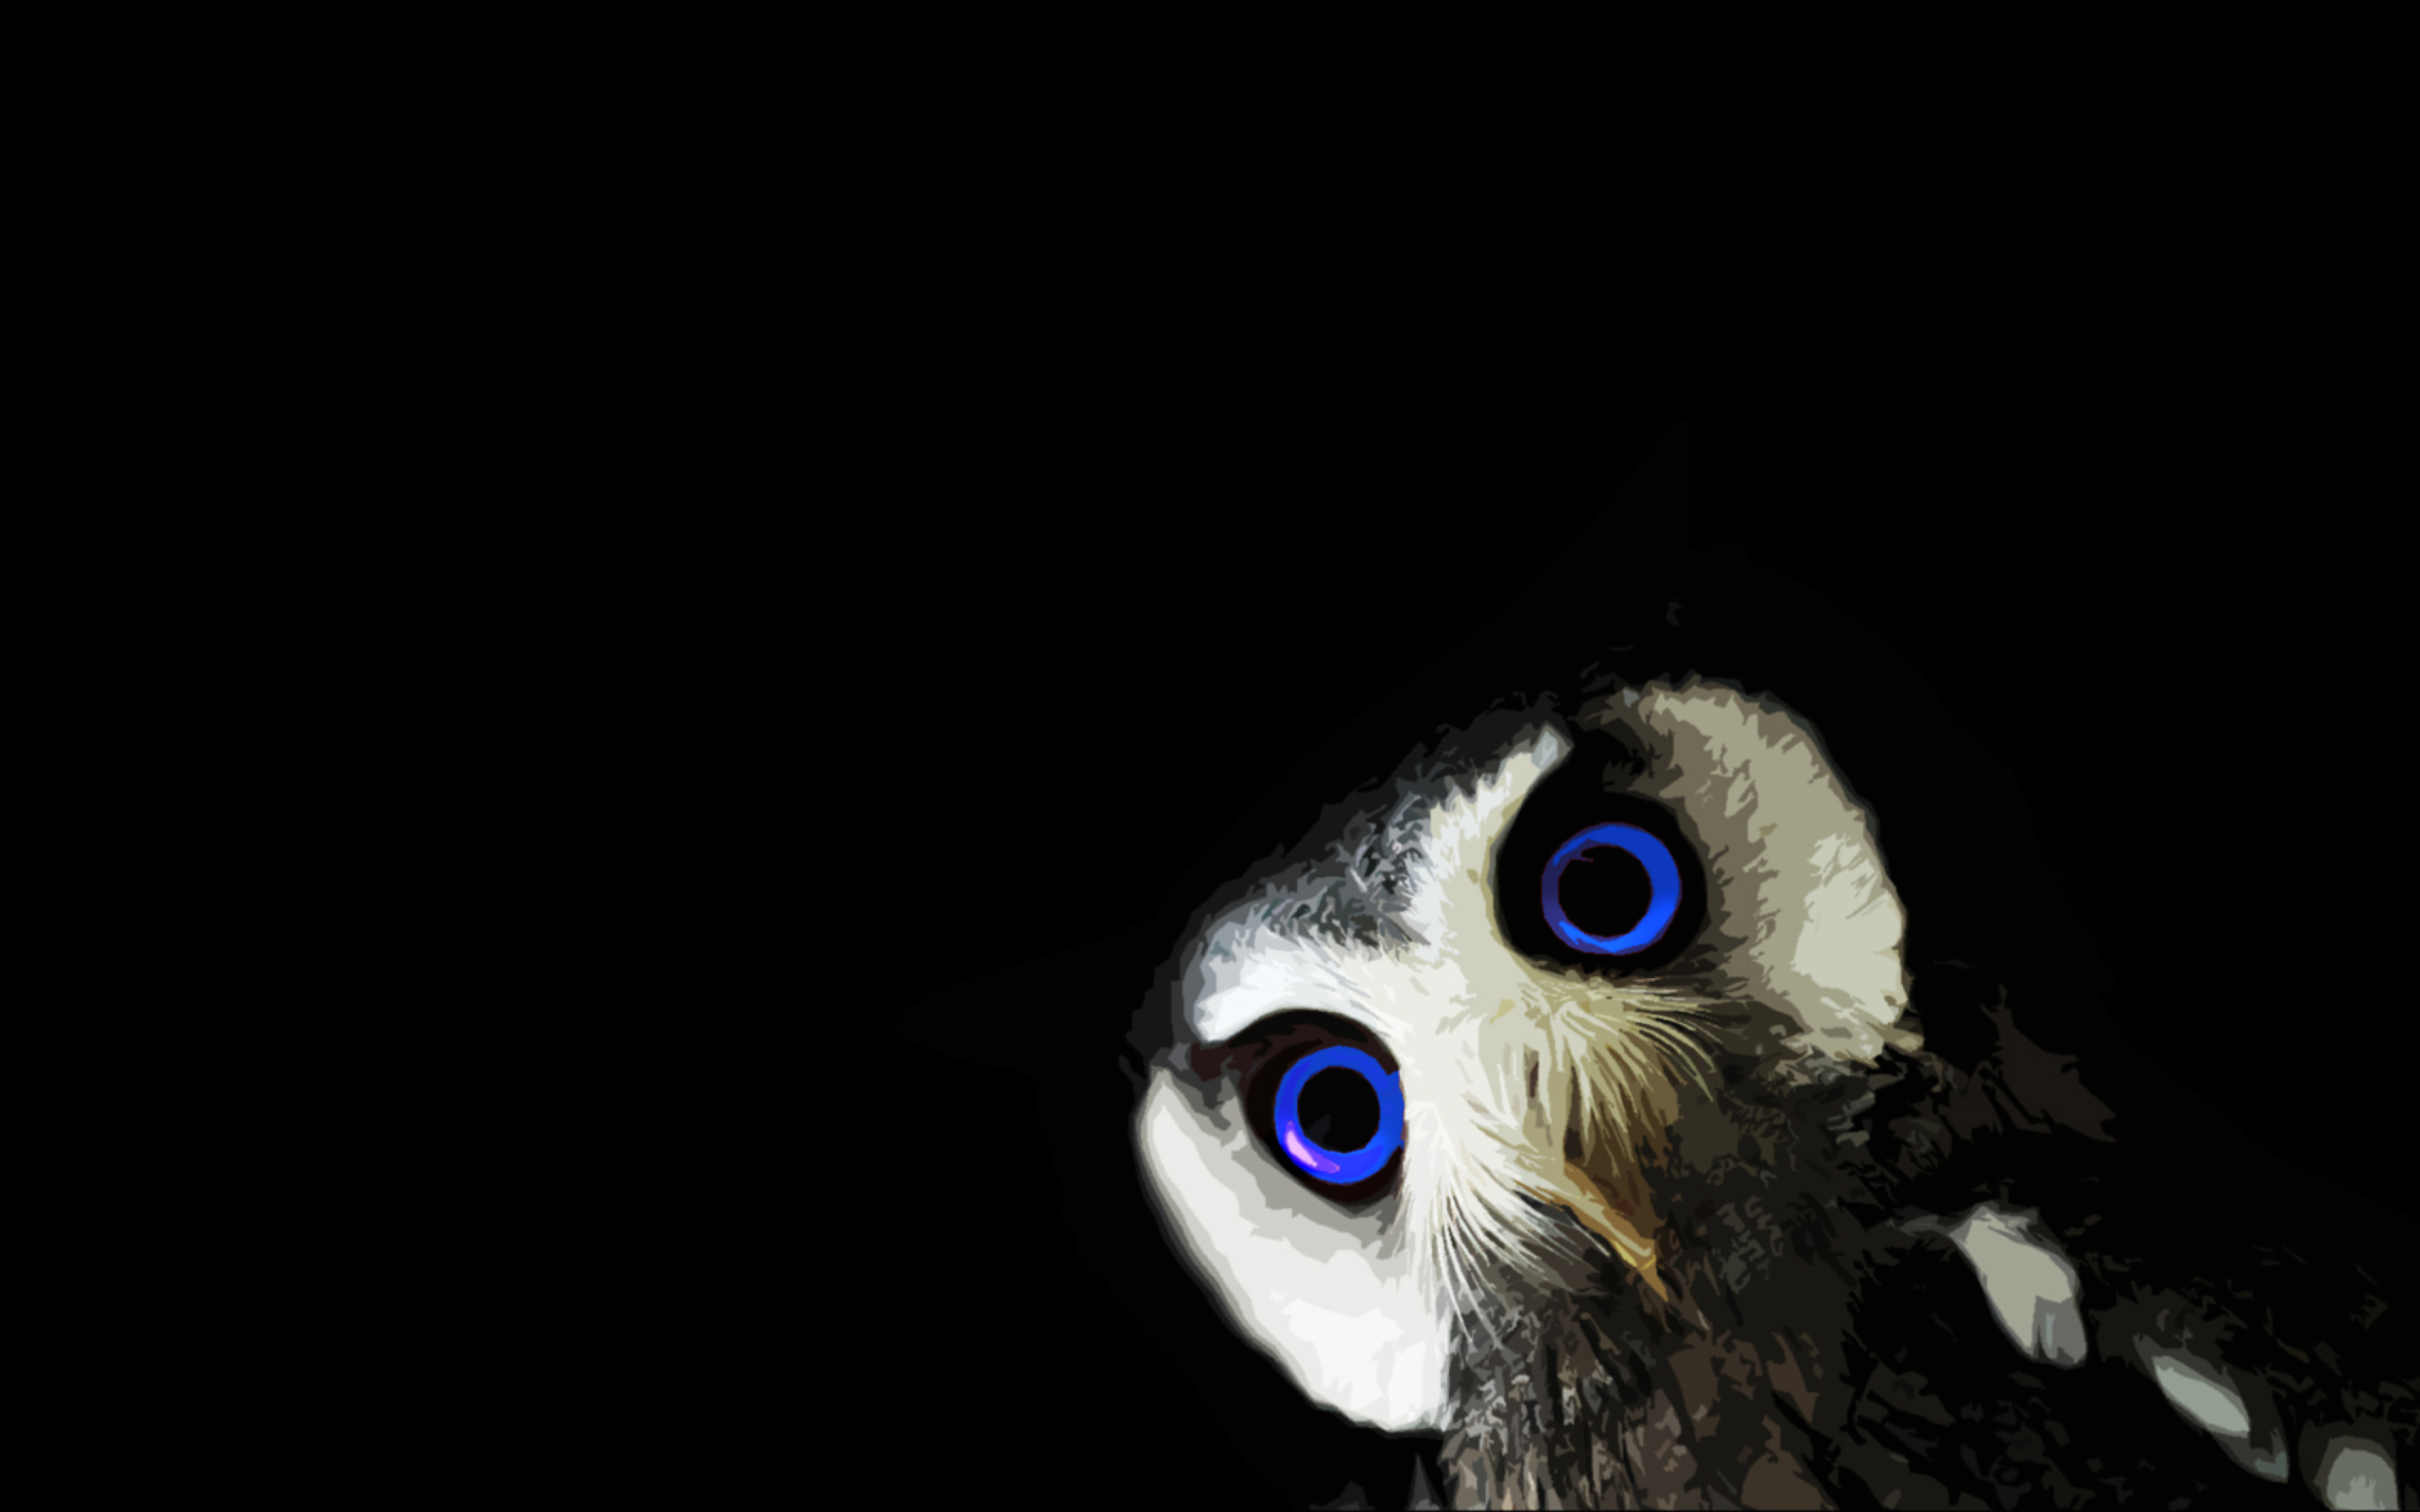 Sfondi Funny Owl With Big Blue Eyes 2560x1600